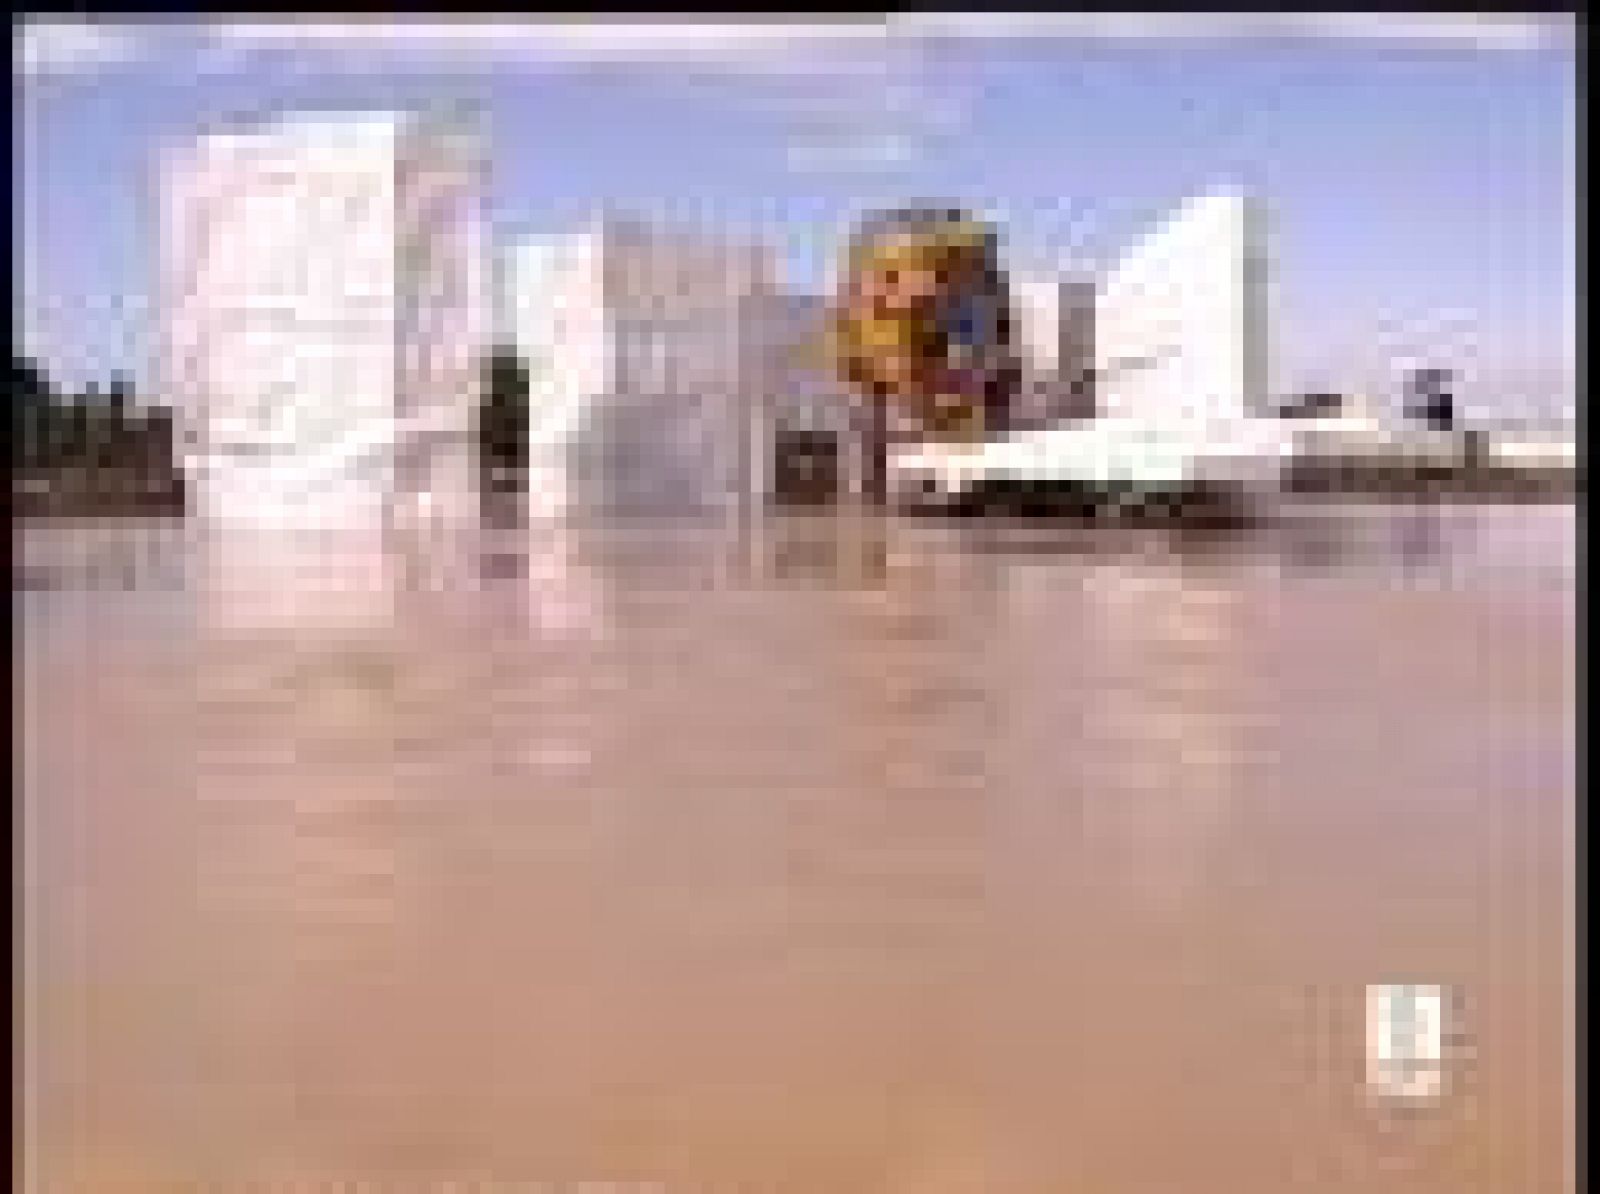 El Gobierno de Aragón ha activado la Fase de Emergencia ante Inundaciones ante la posibilidad de la crecida del Ebro, lo que ha obligado a activar medidas de protección en la Expo de Zaragoza (02/06/08).